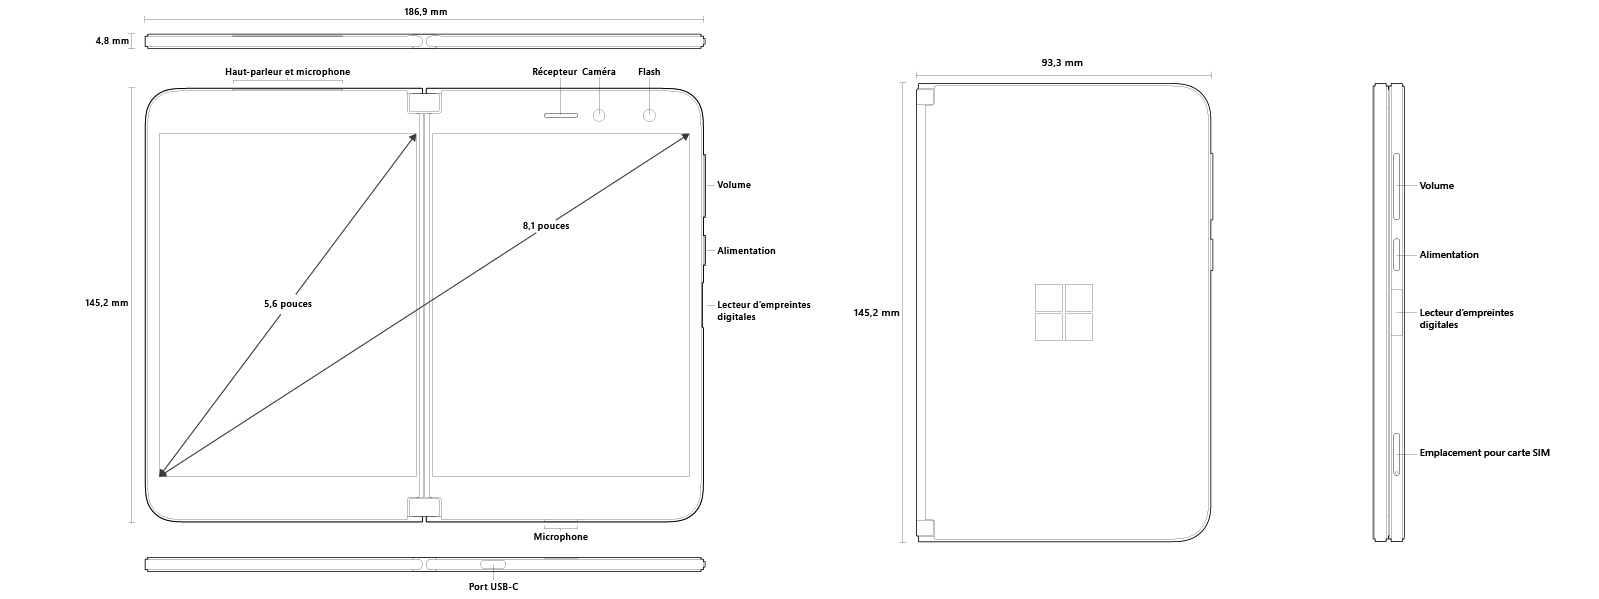 Un diagramme du Surface Duo montrant les dimensions des deux écrans, l’appareil fermé et une vue latérale.